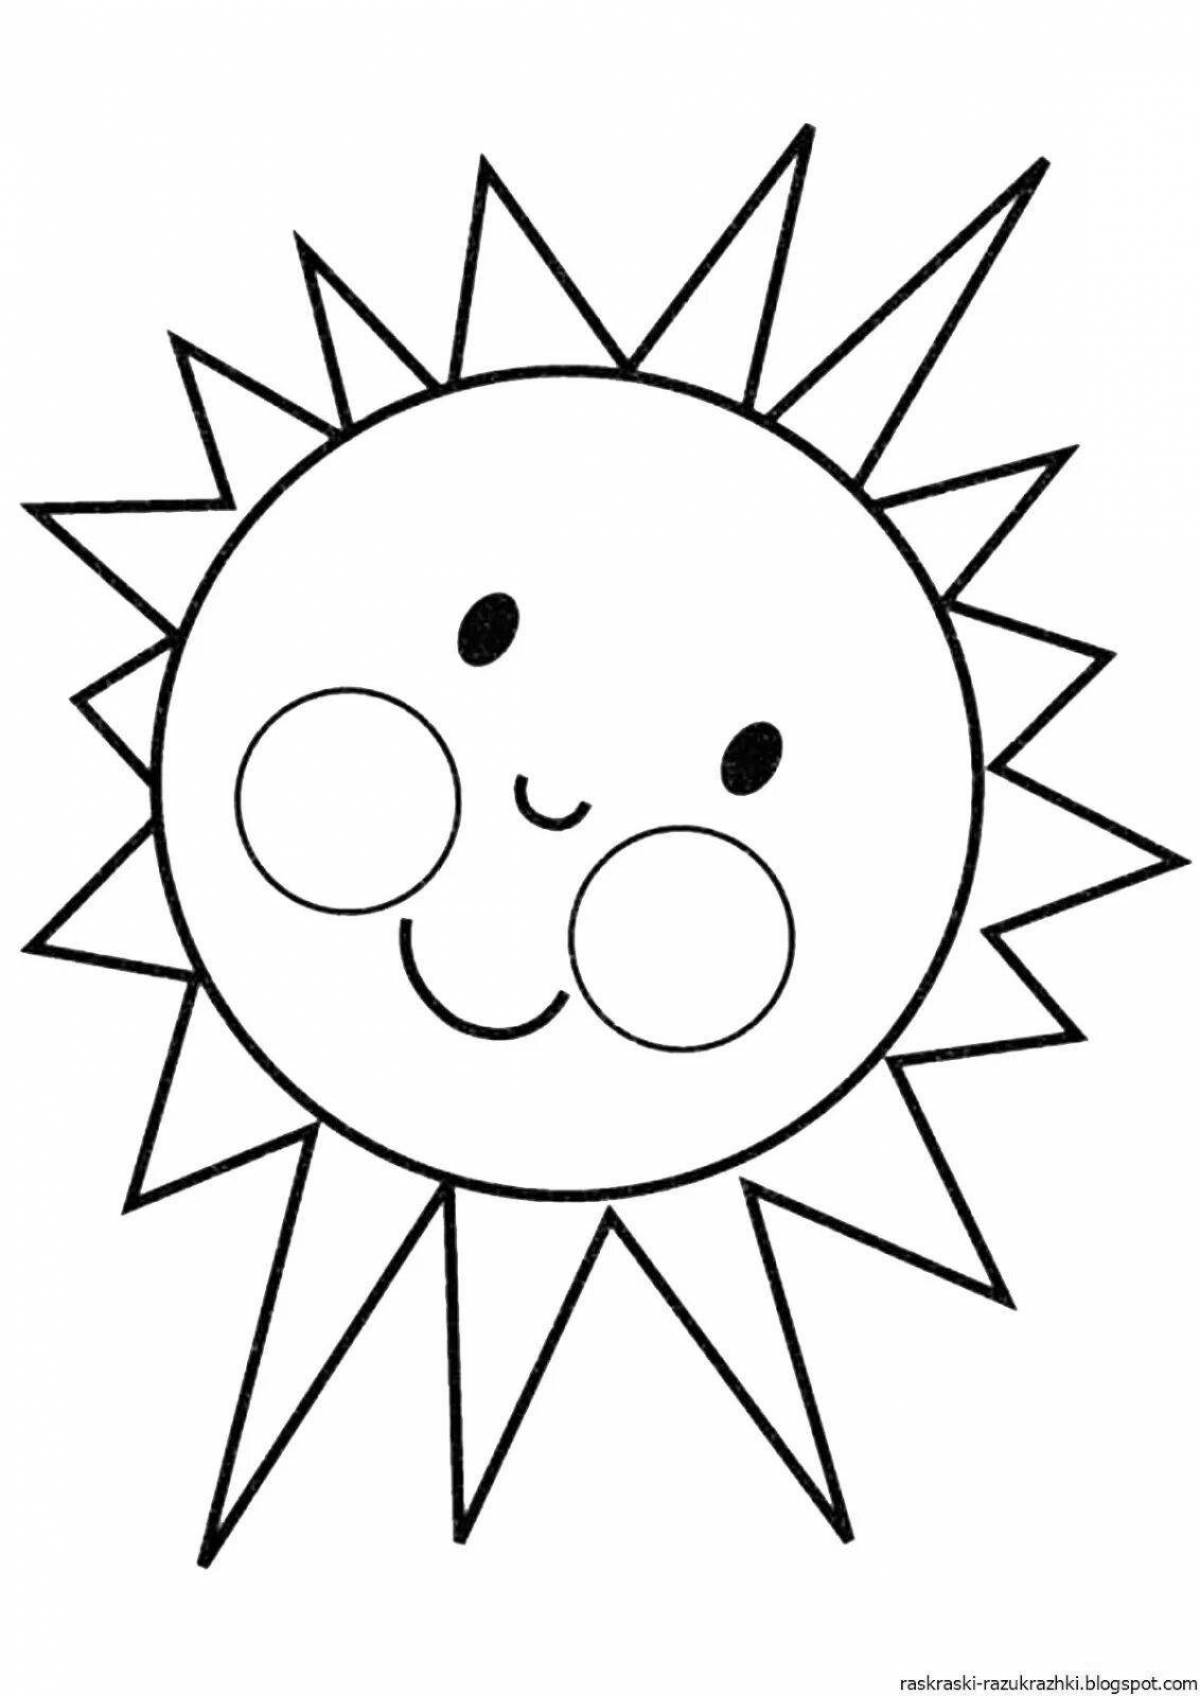 Чудесная раскраска солнце для детей